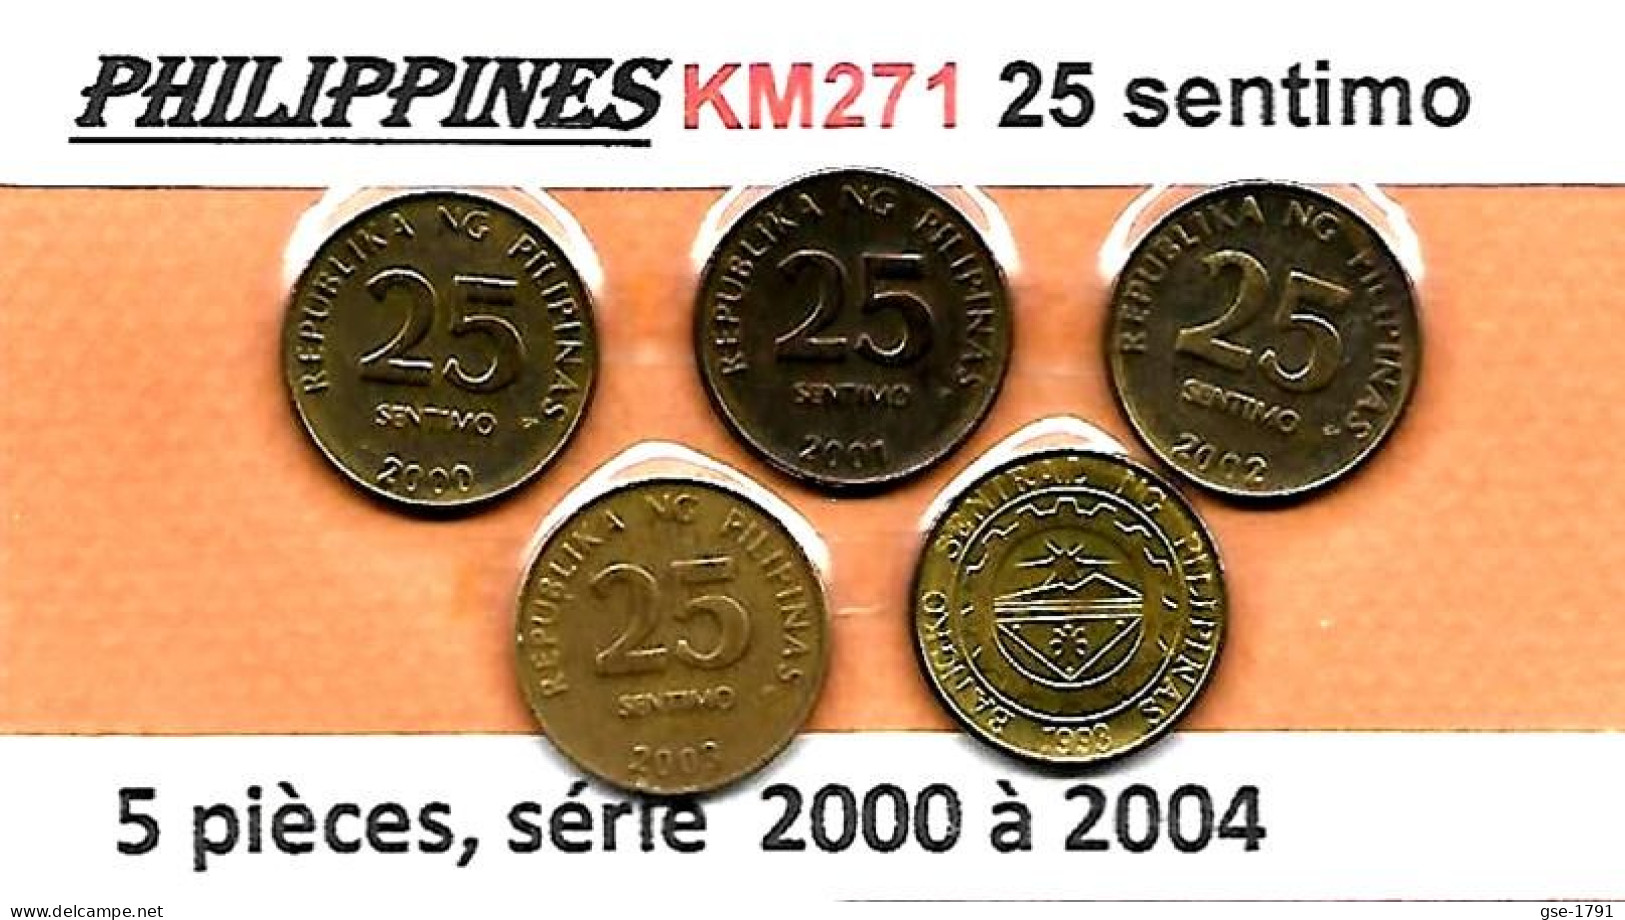 PHILIPPINES  Réforme Coinage, 25 Sentimo Bangko Central  KM 271 , 5 Pièces à Suivre De 2000 à 2004 ,  TTB - Philippines